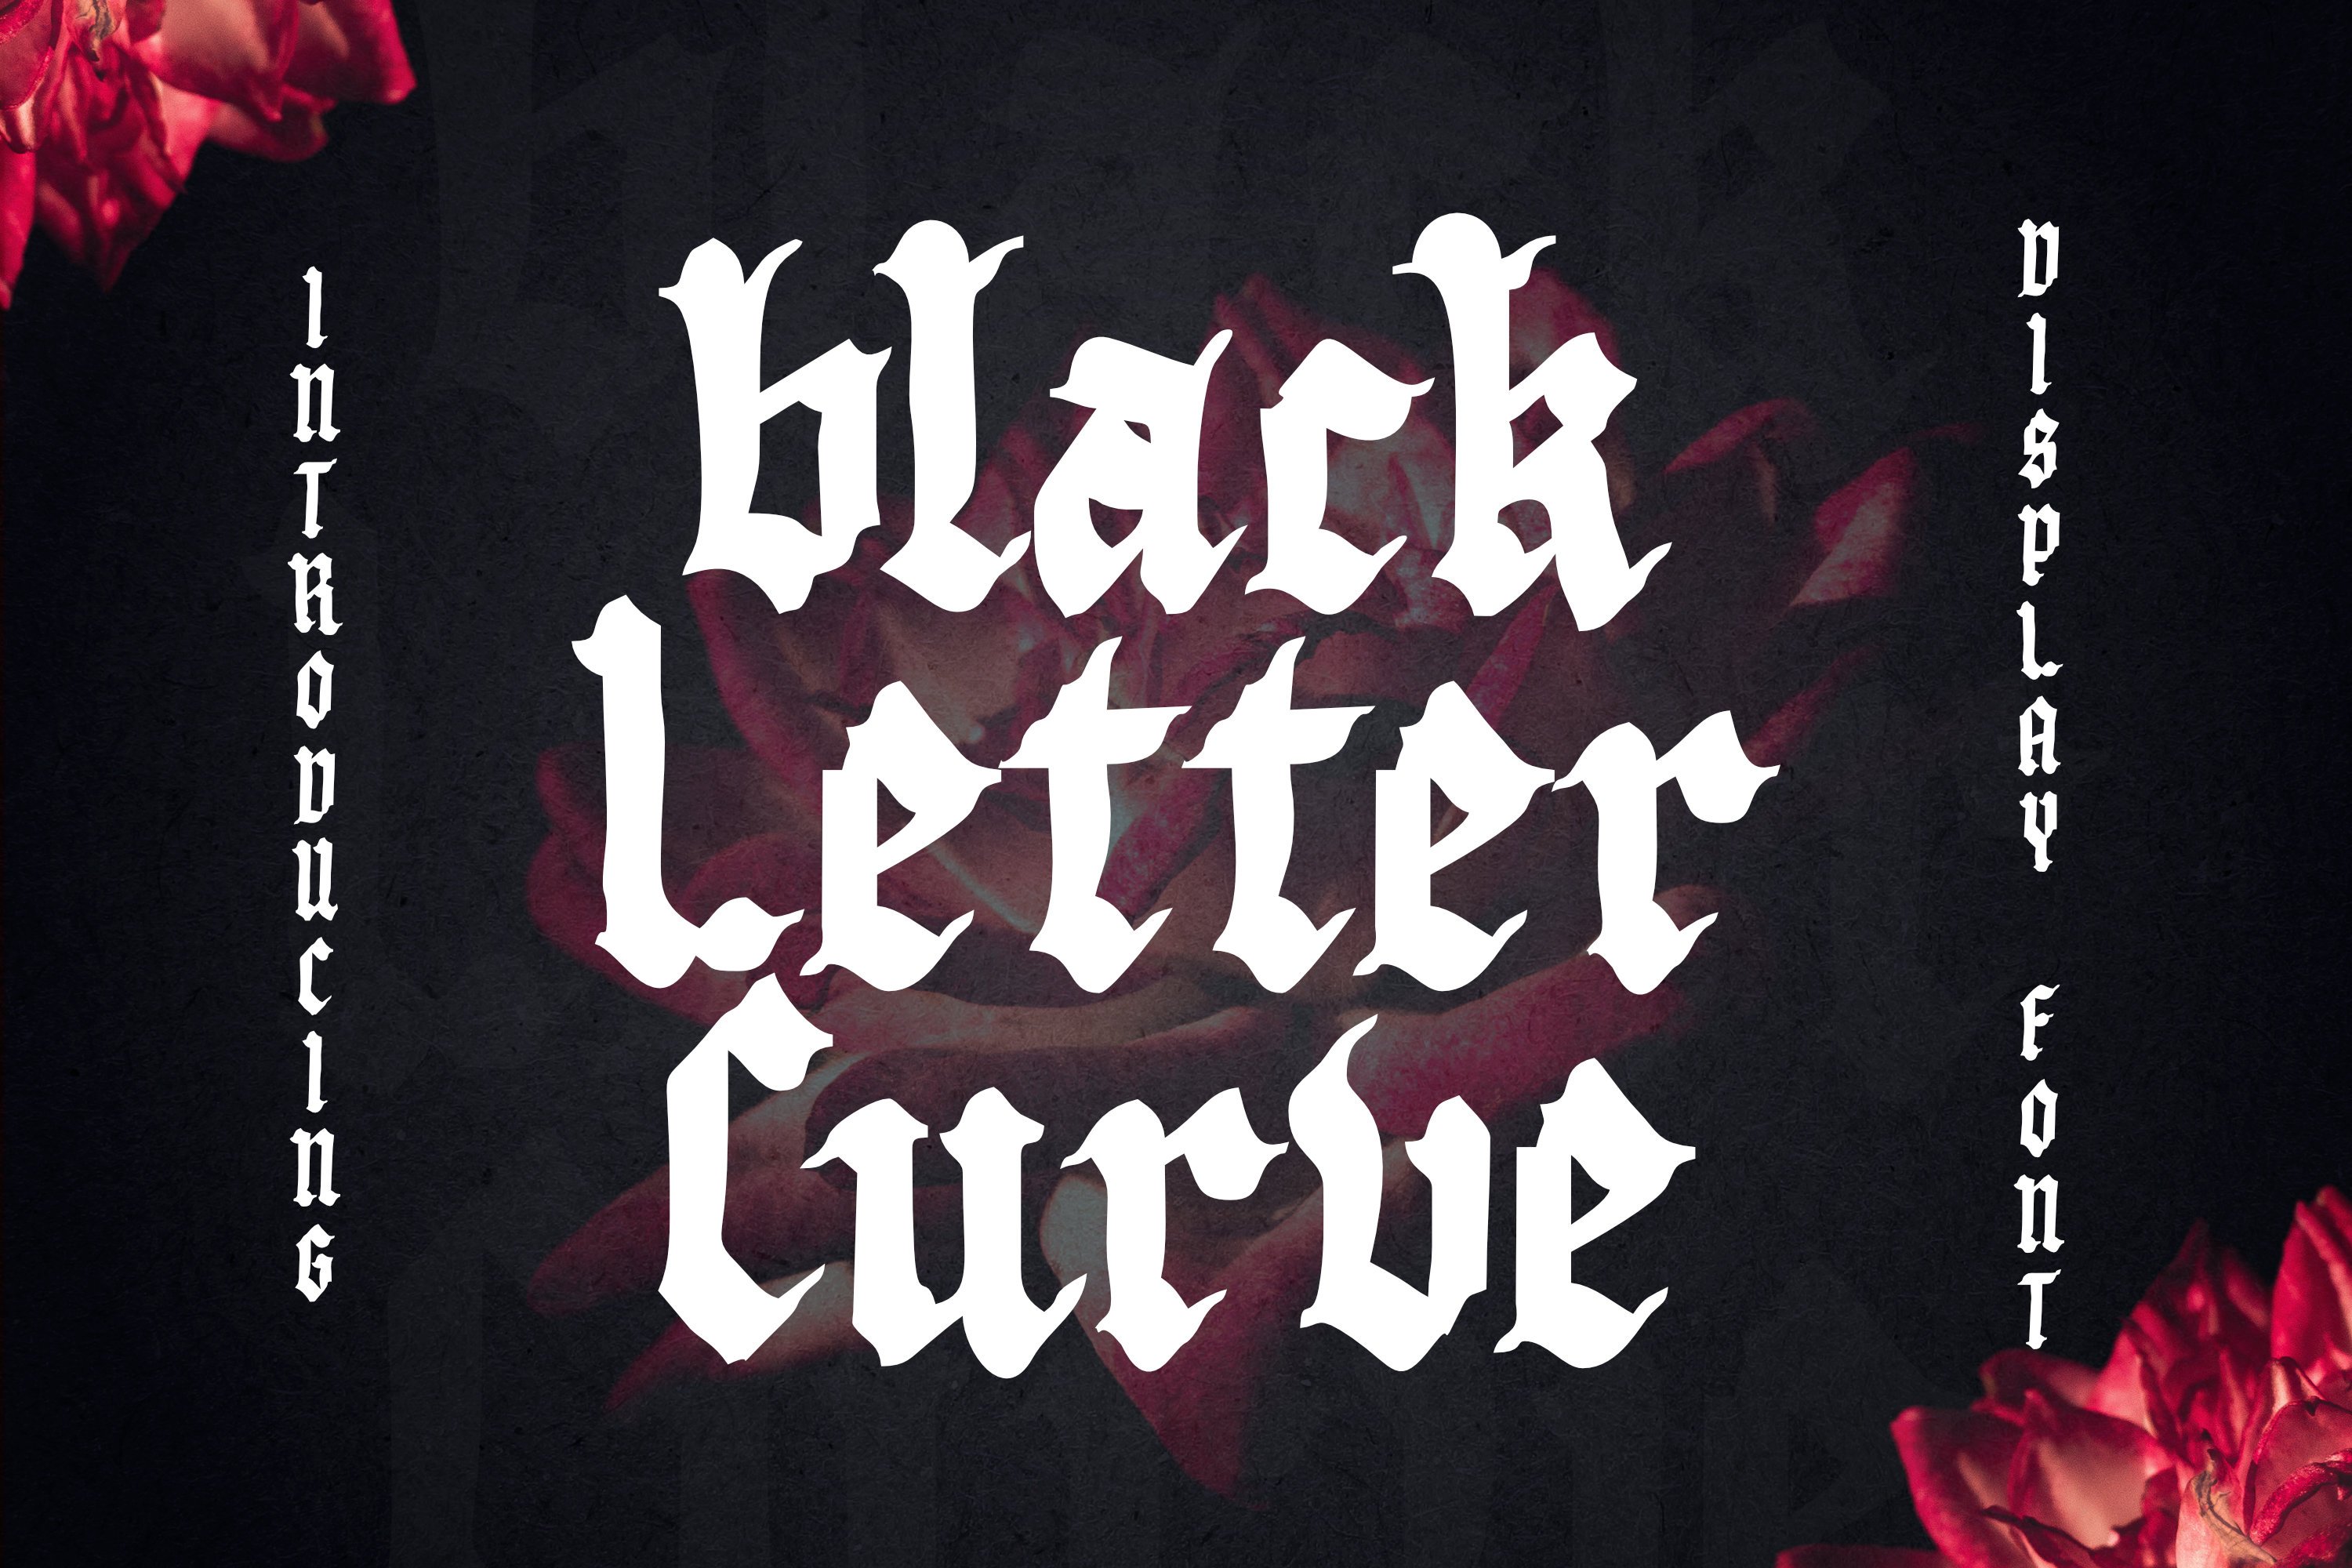 Black Letter Curve Font cover image.